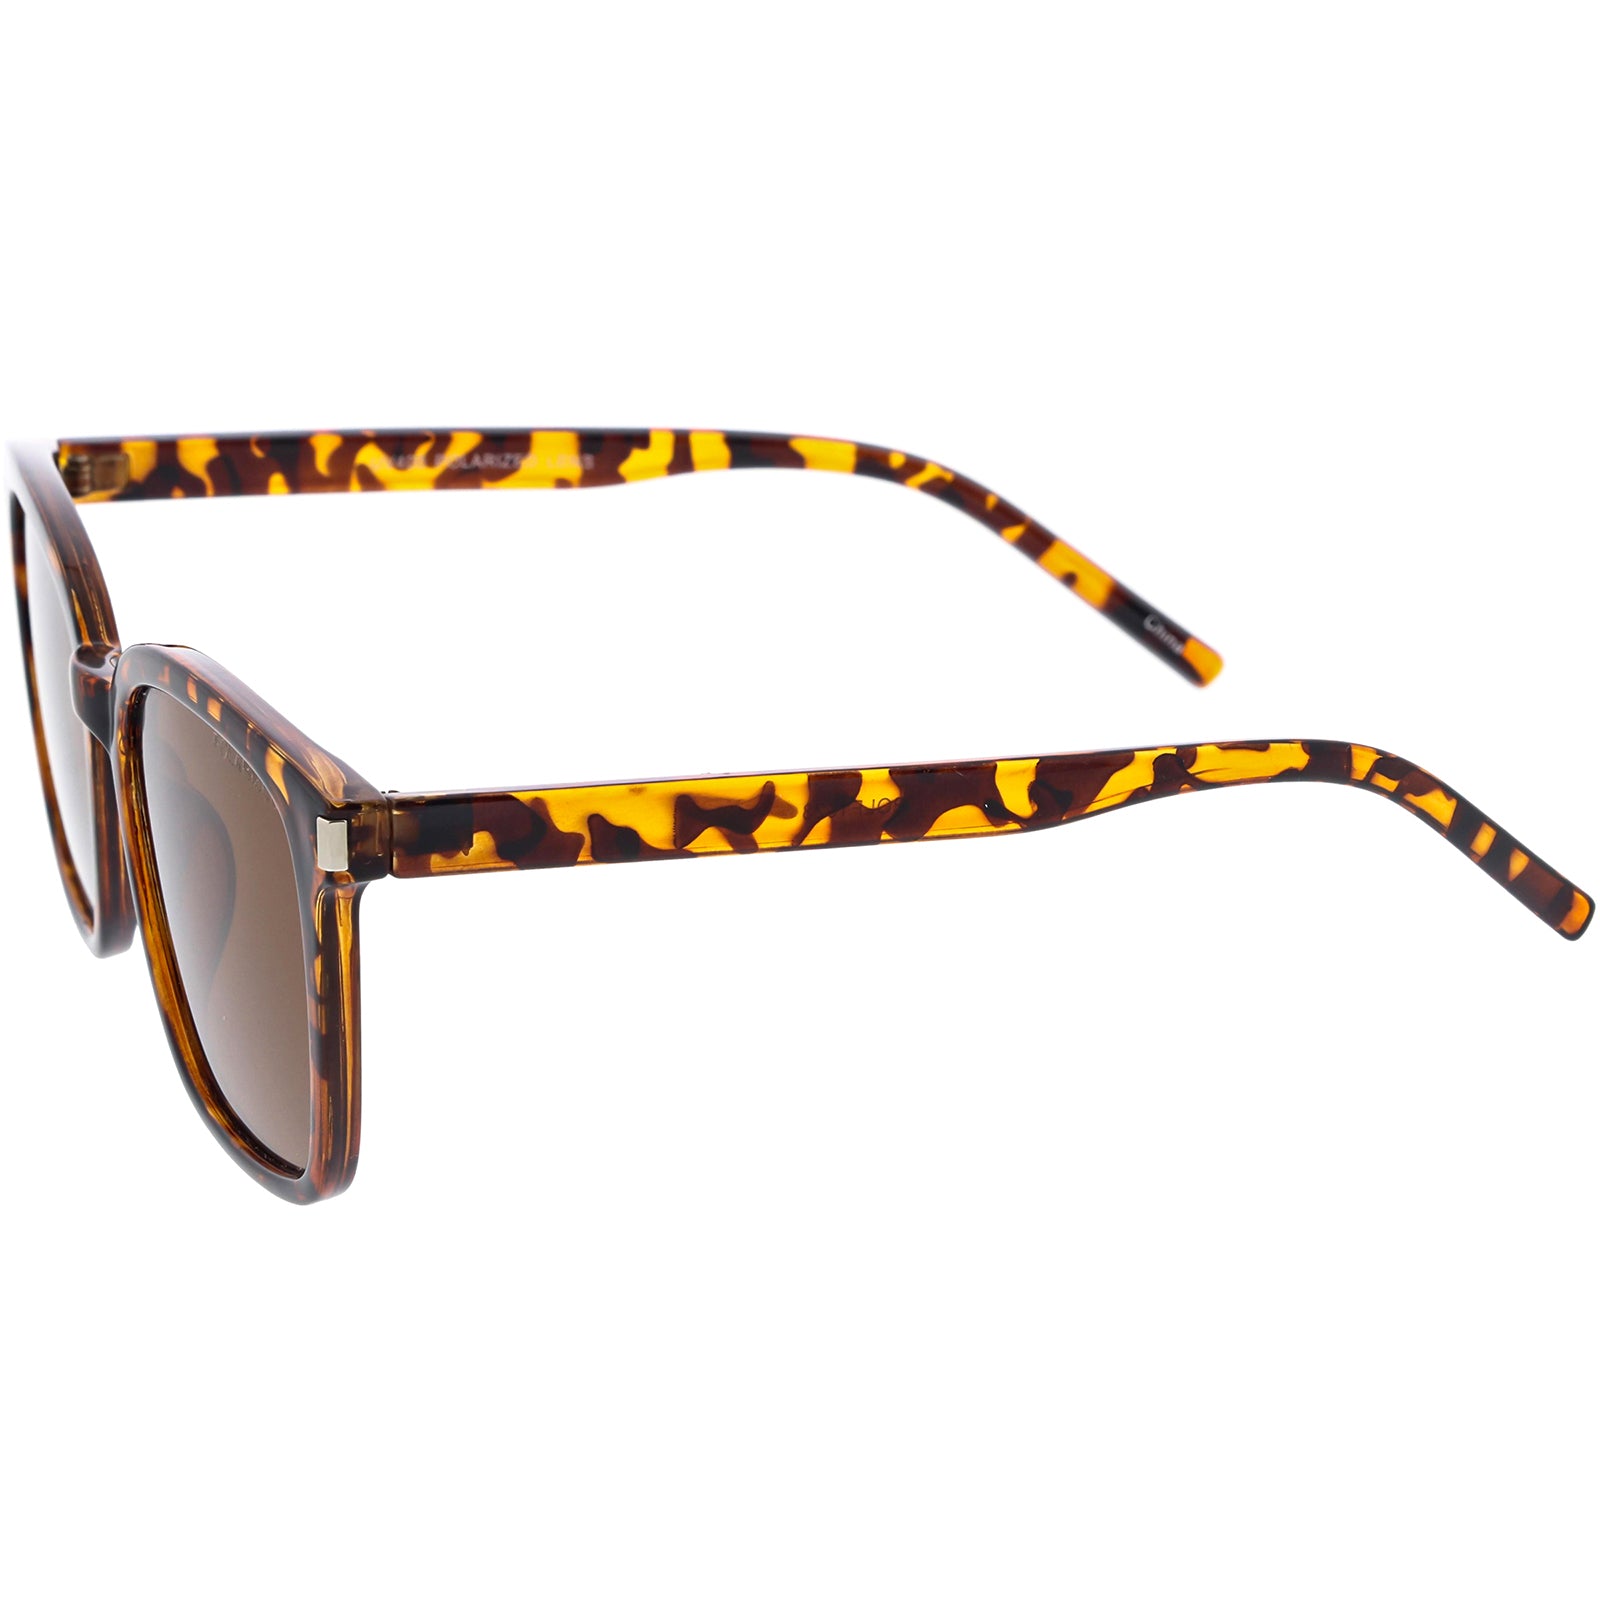 Elegant Polarized Lightweight Horn Rimmed Square Sunglasses 55mm